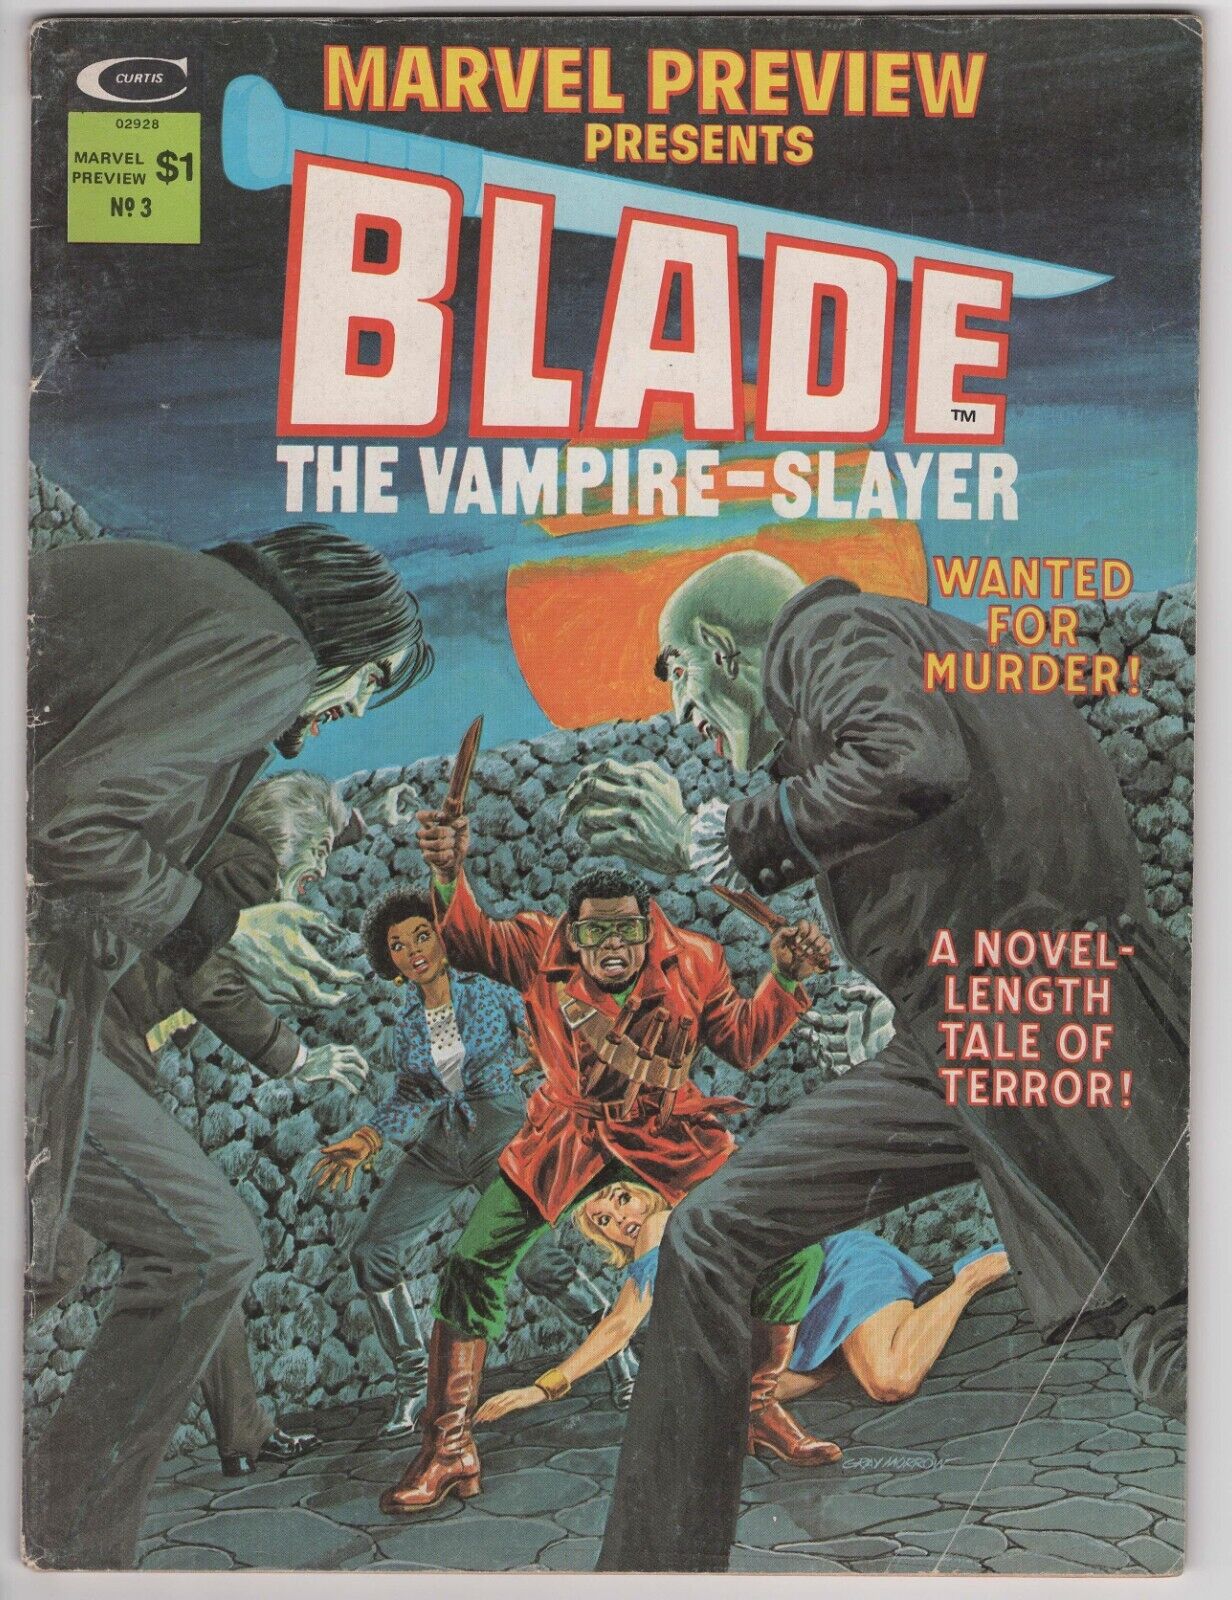 🗡️ - MARVEL PREVIEW MAGAZINE #3 (1976) Marvel - Blade Vampire Slayer,